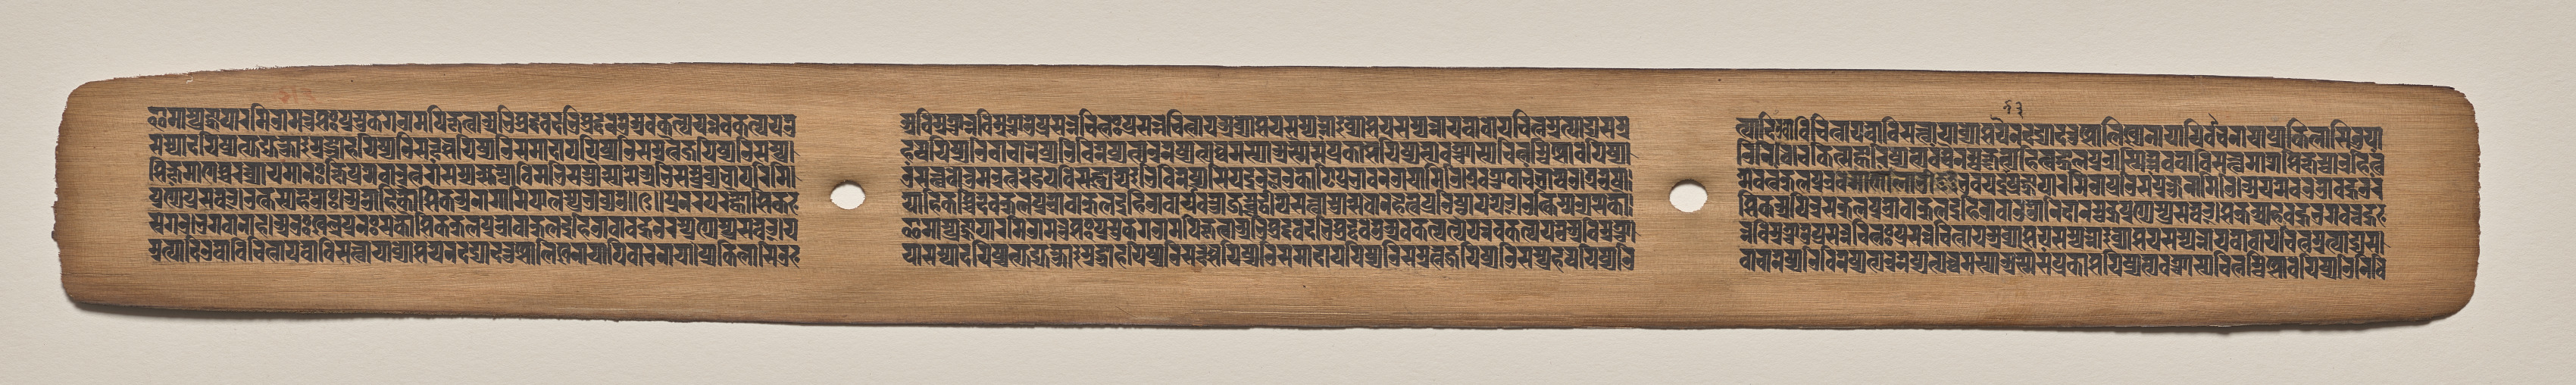 Text, folio 43 (recto), from a Manuscript of the Perfection of Wisdom in Eight Thousand Lines (Ashtasahasrika Prajnaparamita-sutra)